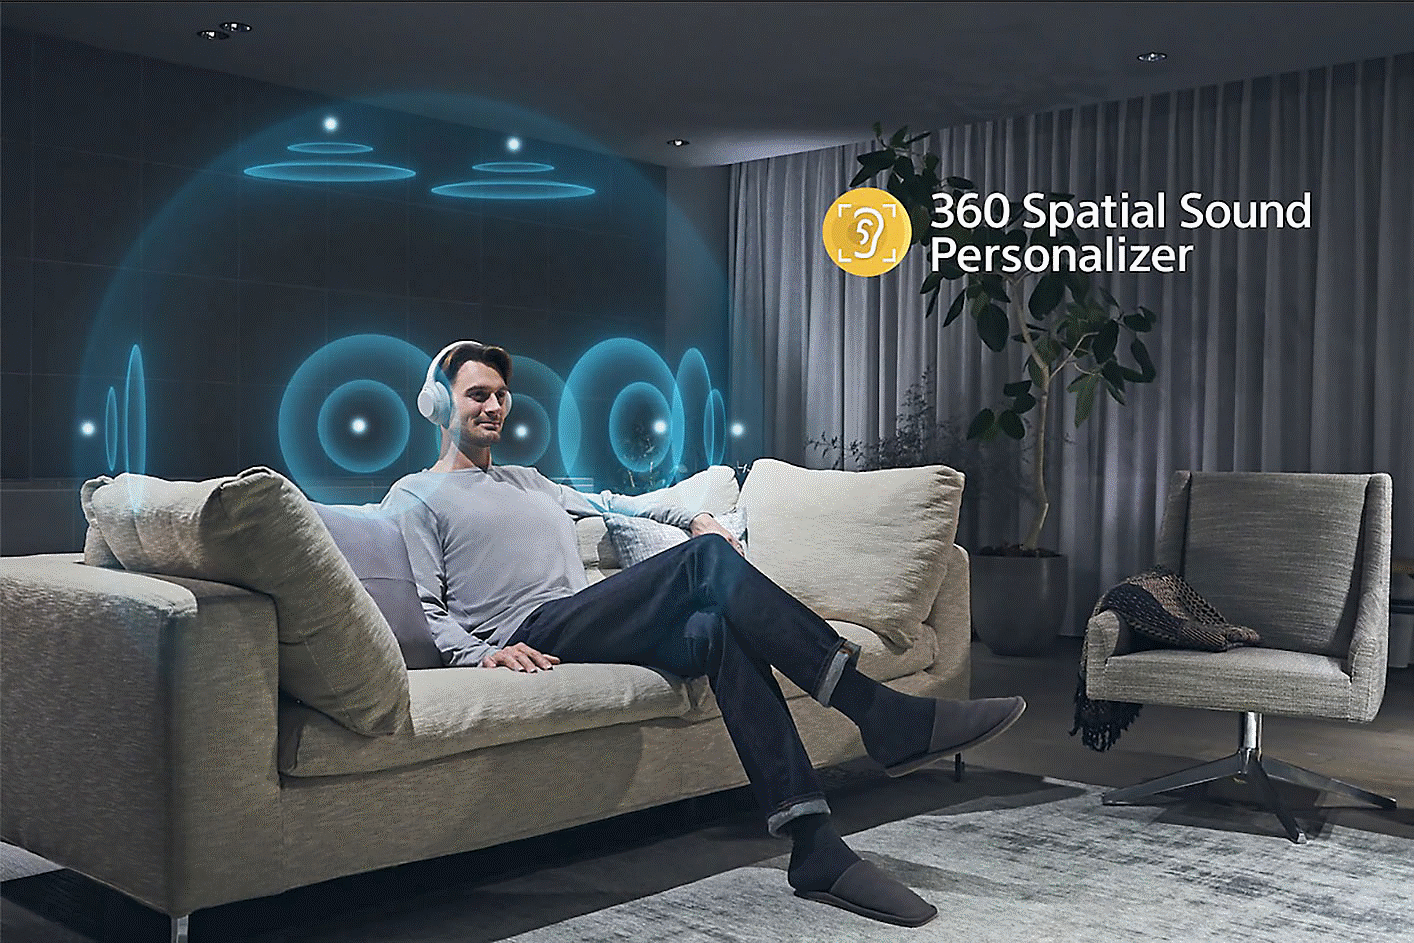 Image d'une personne sur un canapé portant des écouteurs entourés de cercles concentriques et du logo Son spatial 360 sur la droite